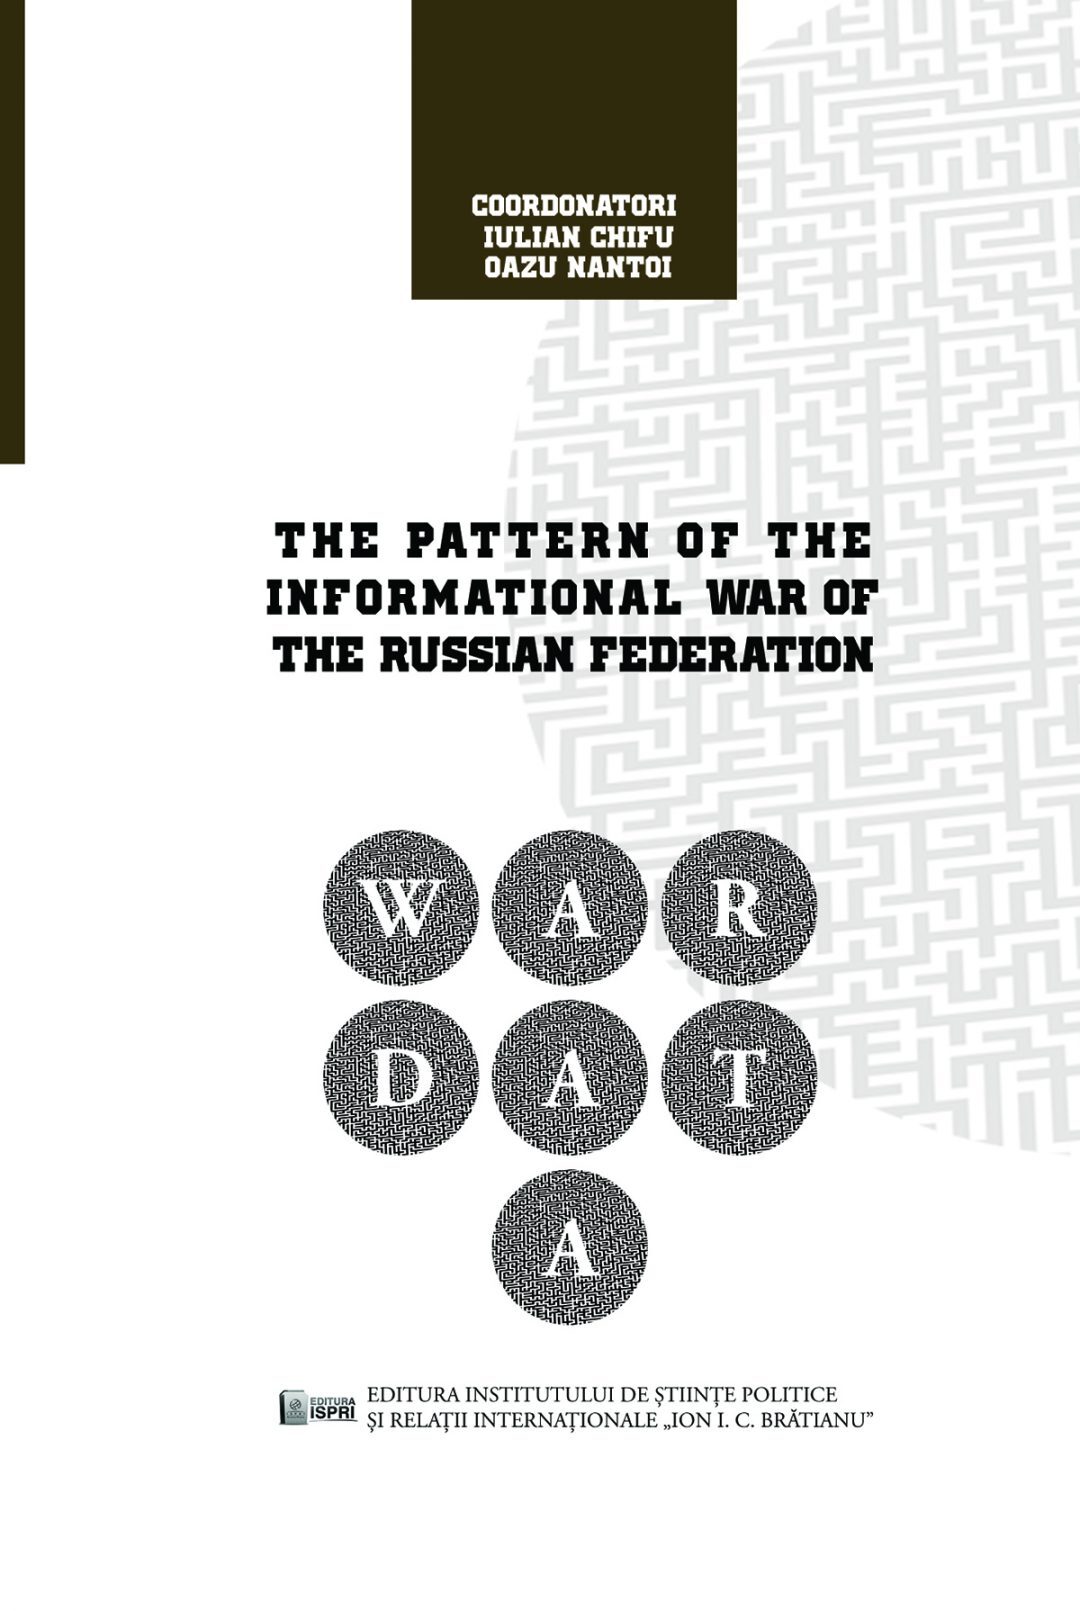 Iulian Chifu, Oazu Nantoi (coord.) The Pattern of the Informational War of the Russian Federation